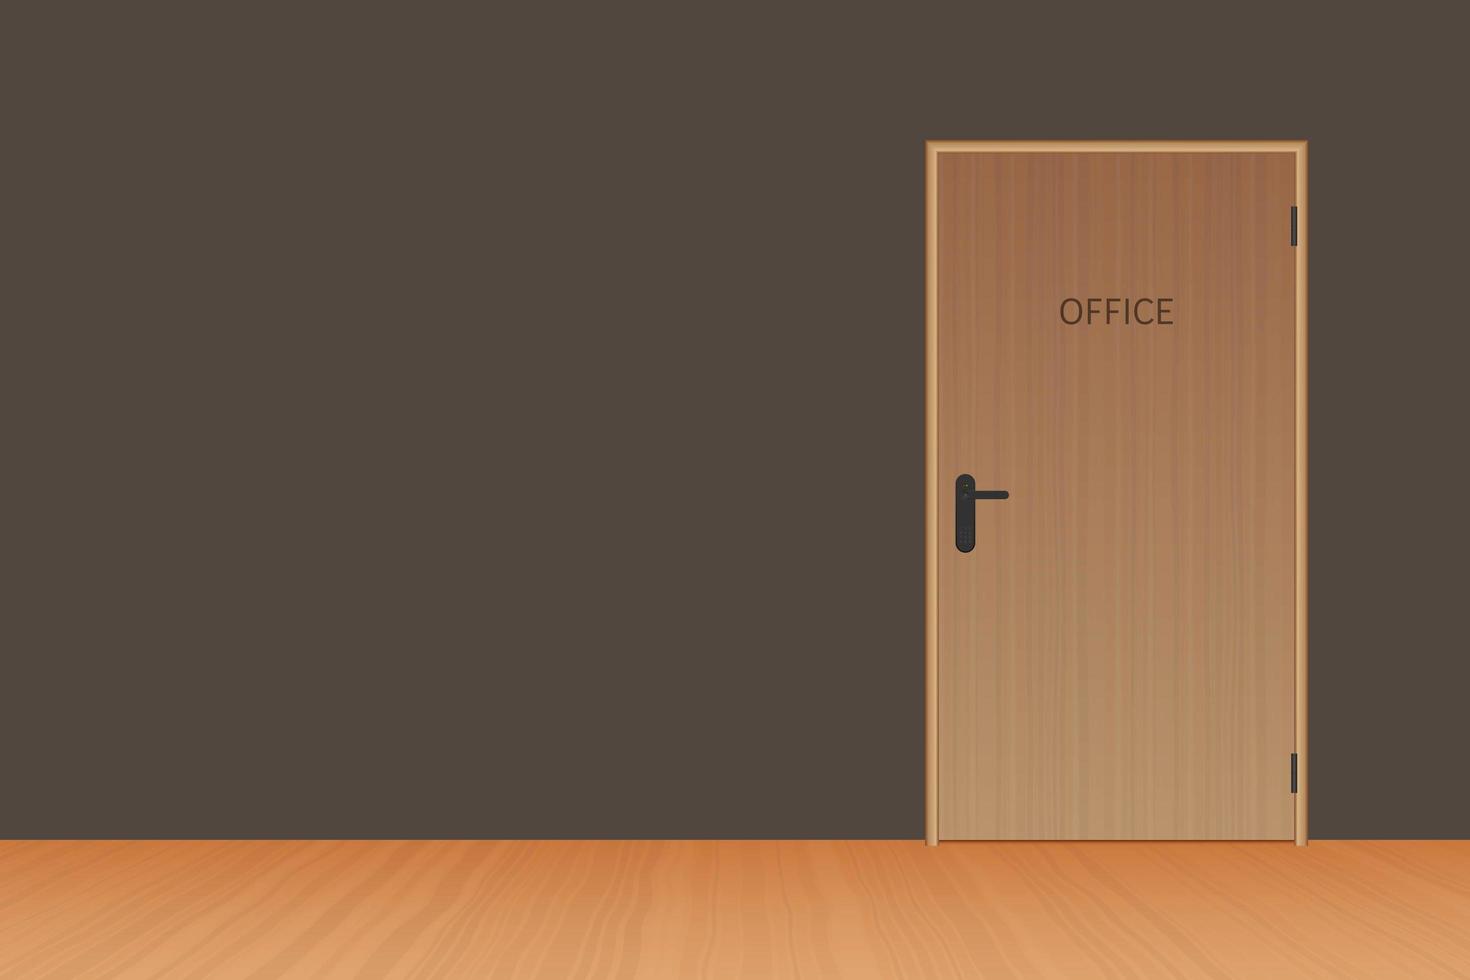 Office wooden door  vector